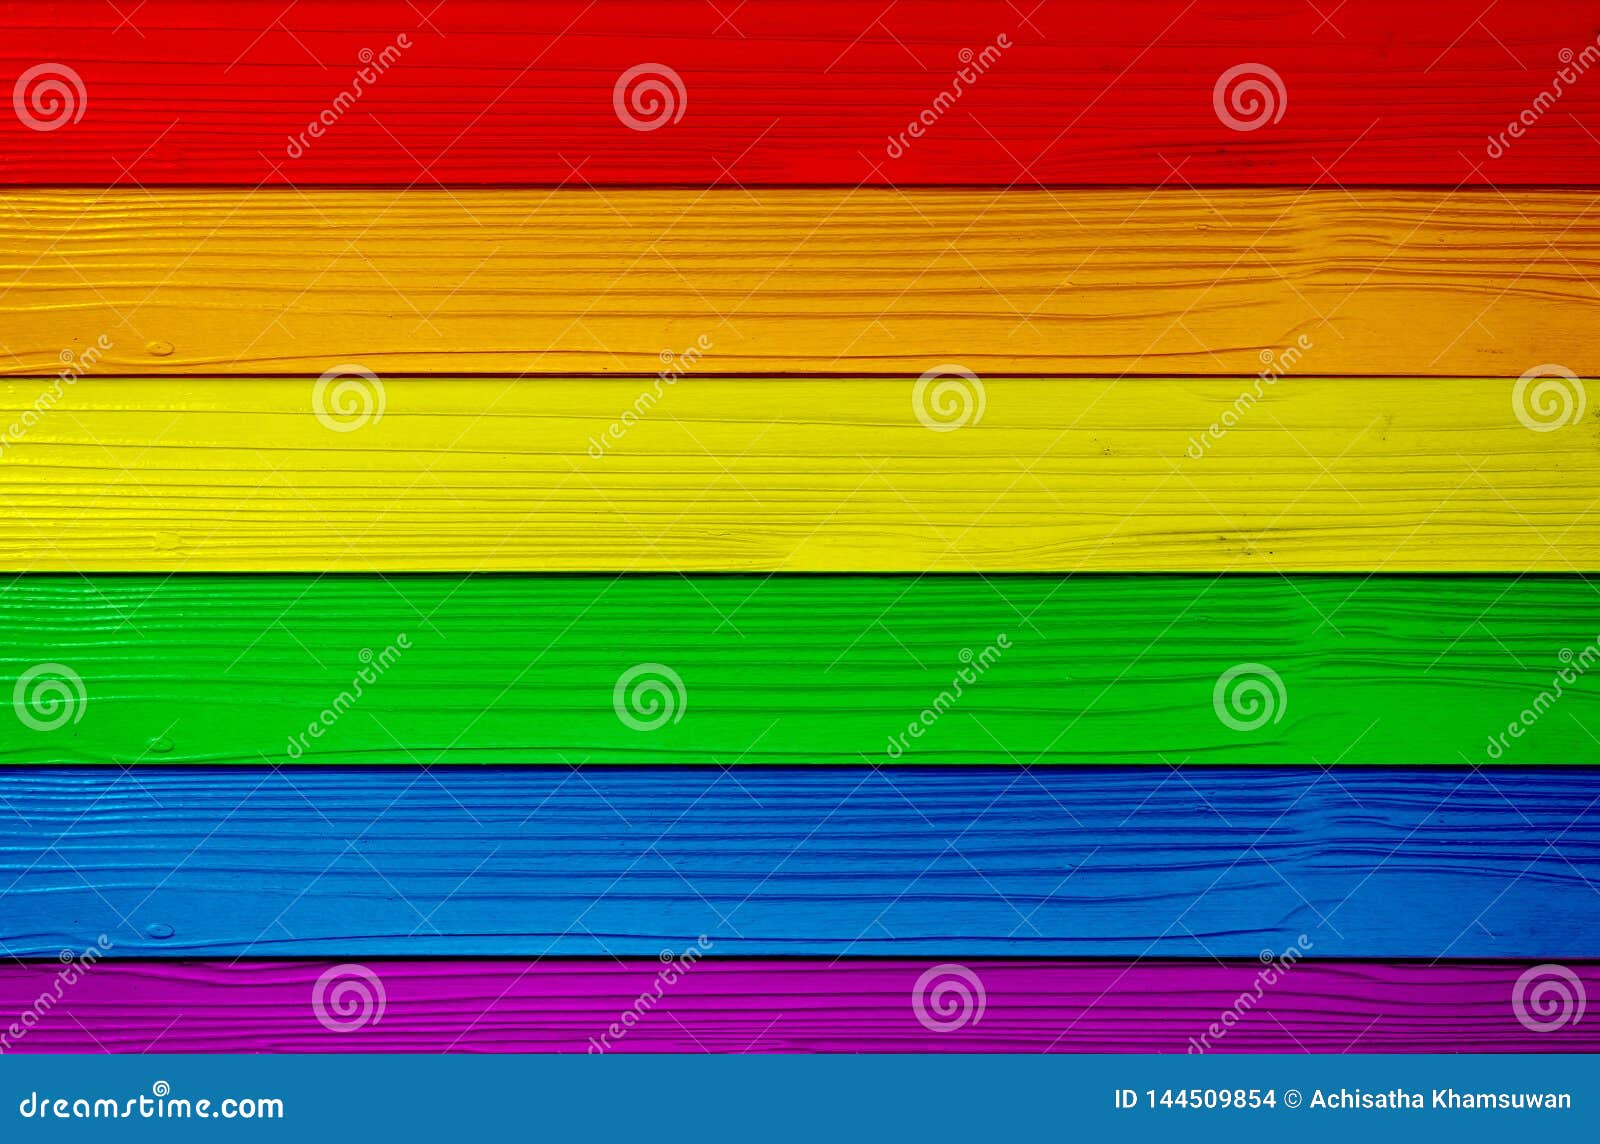 Biểu tượng LGBTQ+ trên nền gỗ là một sự kết hợp hoàn hảo giữa tôn trọng và sự đa dạng. Với bức hình này, bạn sẽ nhận được thông điệp của sự yêu thương và tôn trọng đối với mọi người, bất kể giới tính và hạng cấp xã hội.